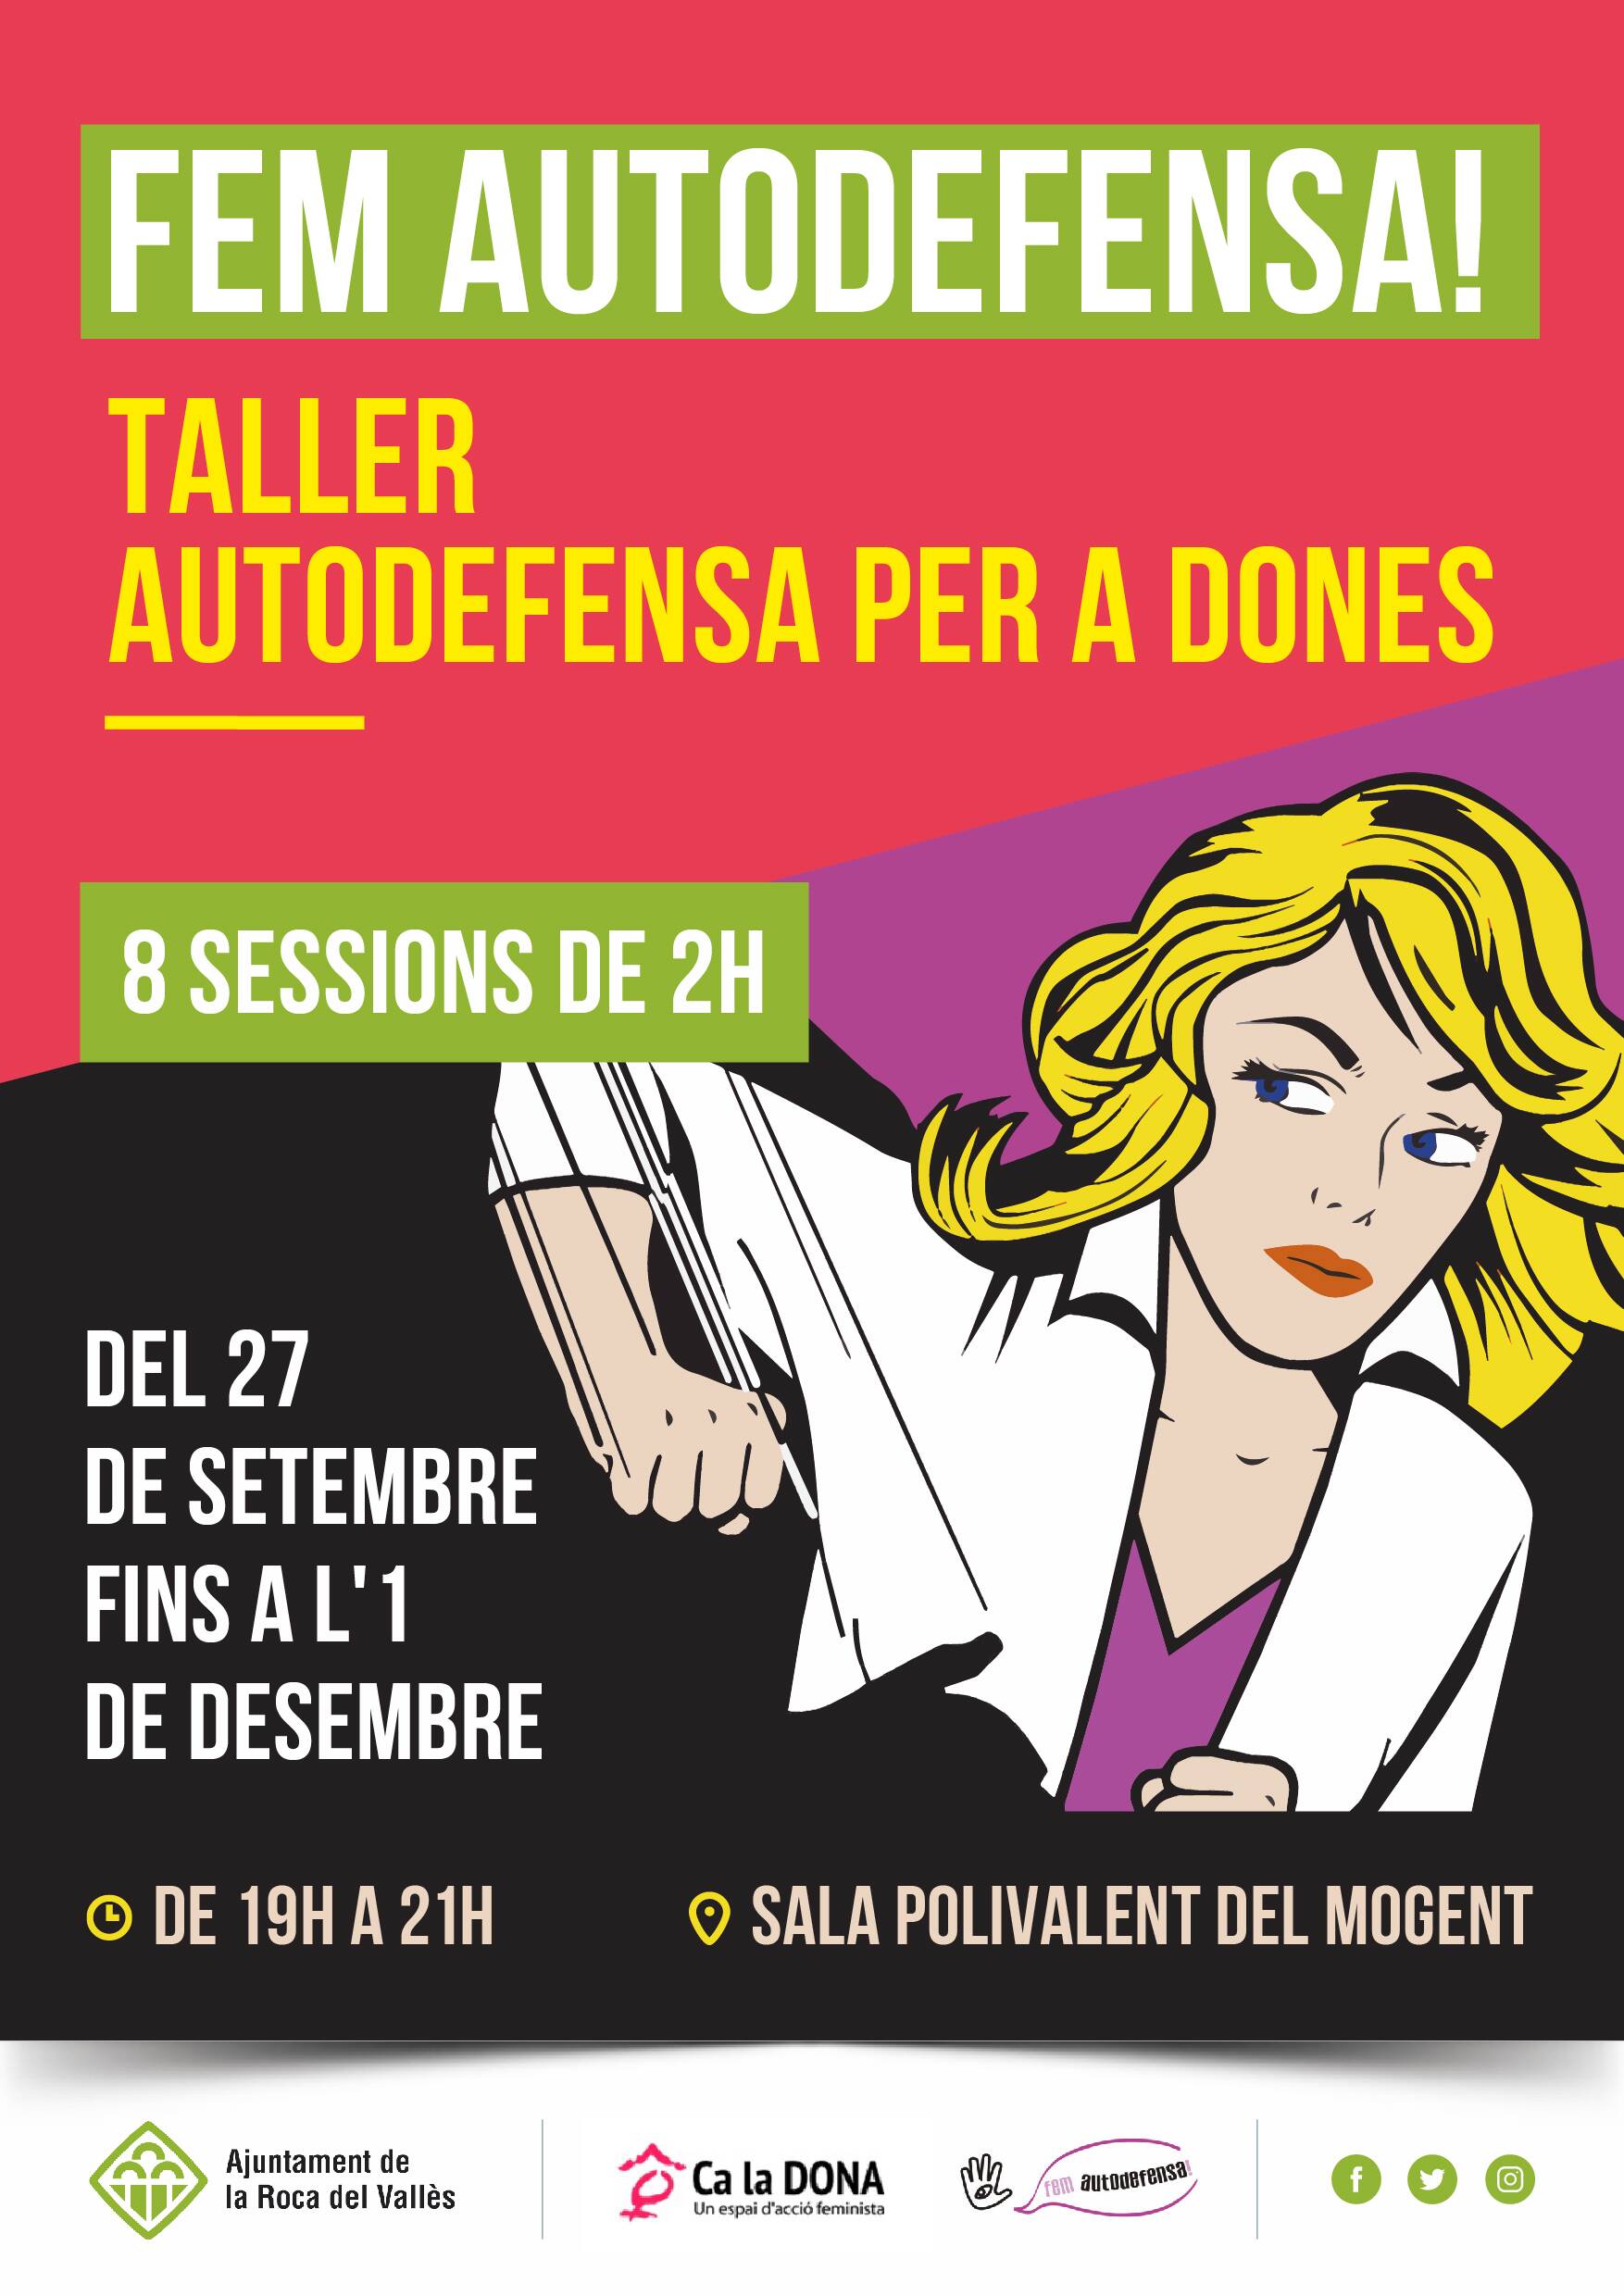 El 27 de setembre s'inicia a la Roca del Vallès un taller d'autodefensa gratuït a la sala polivalent de Mogent